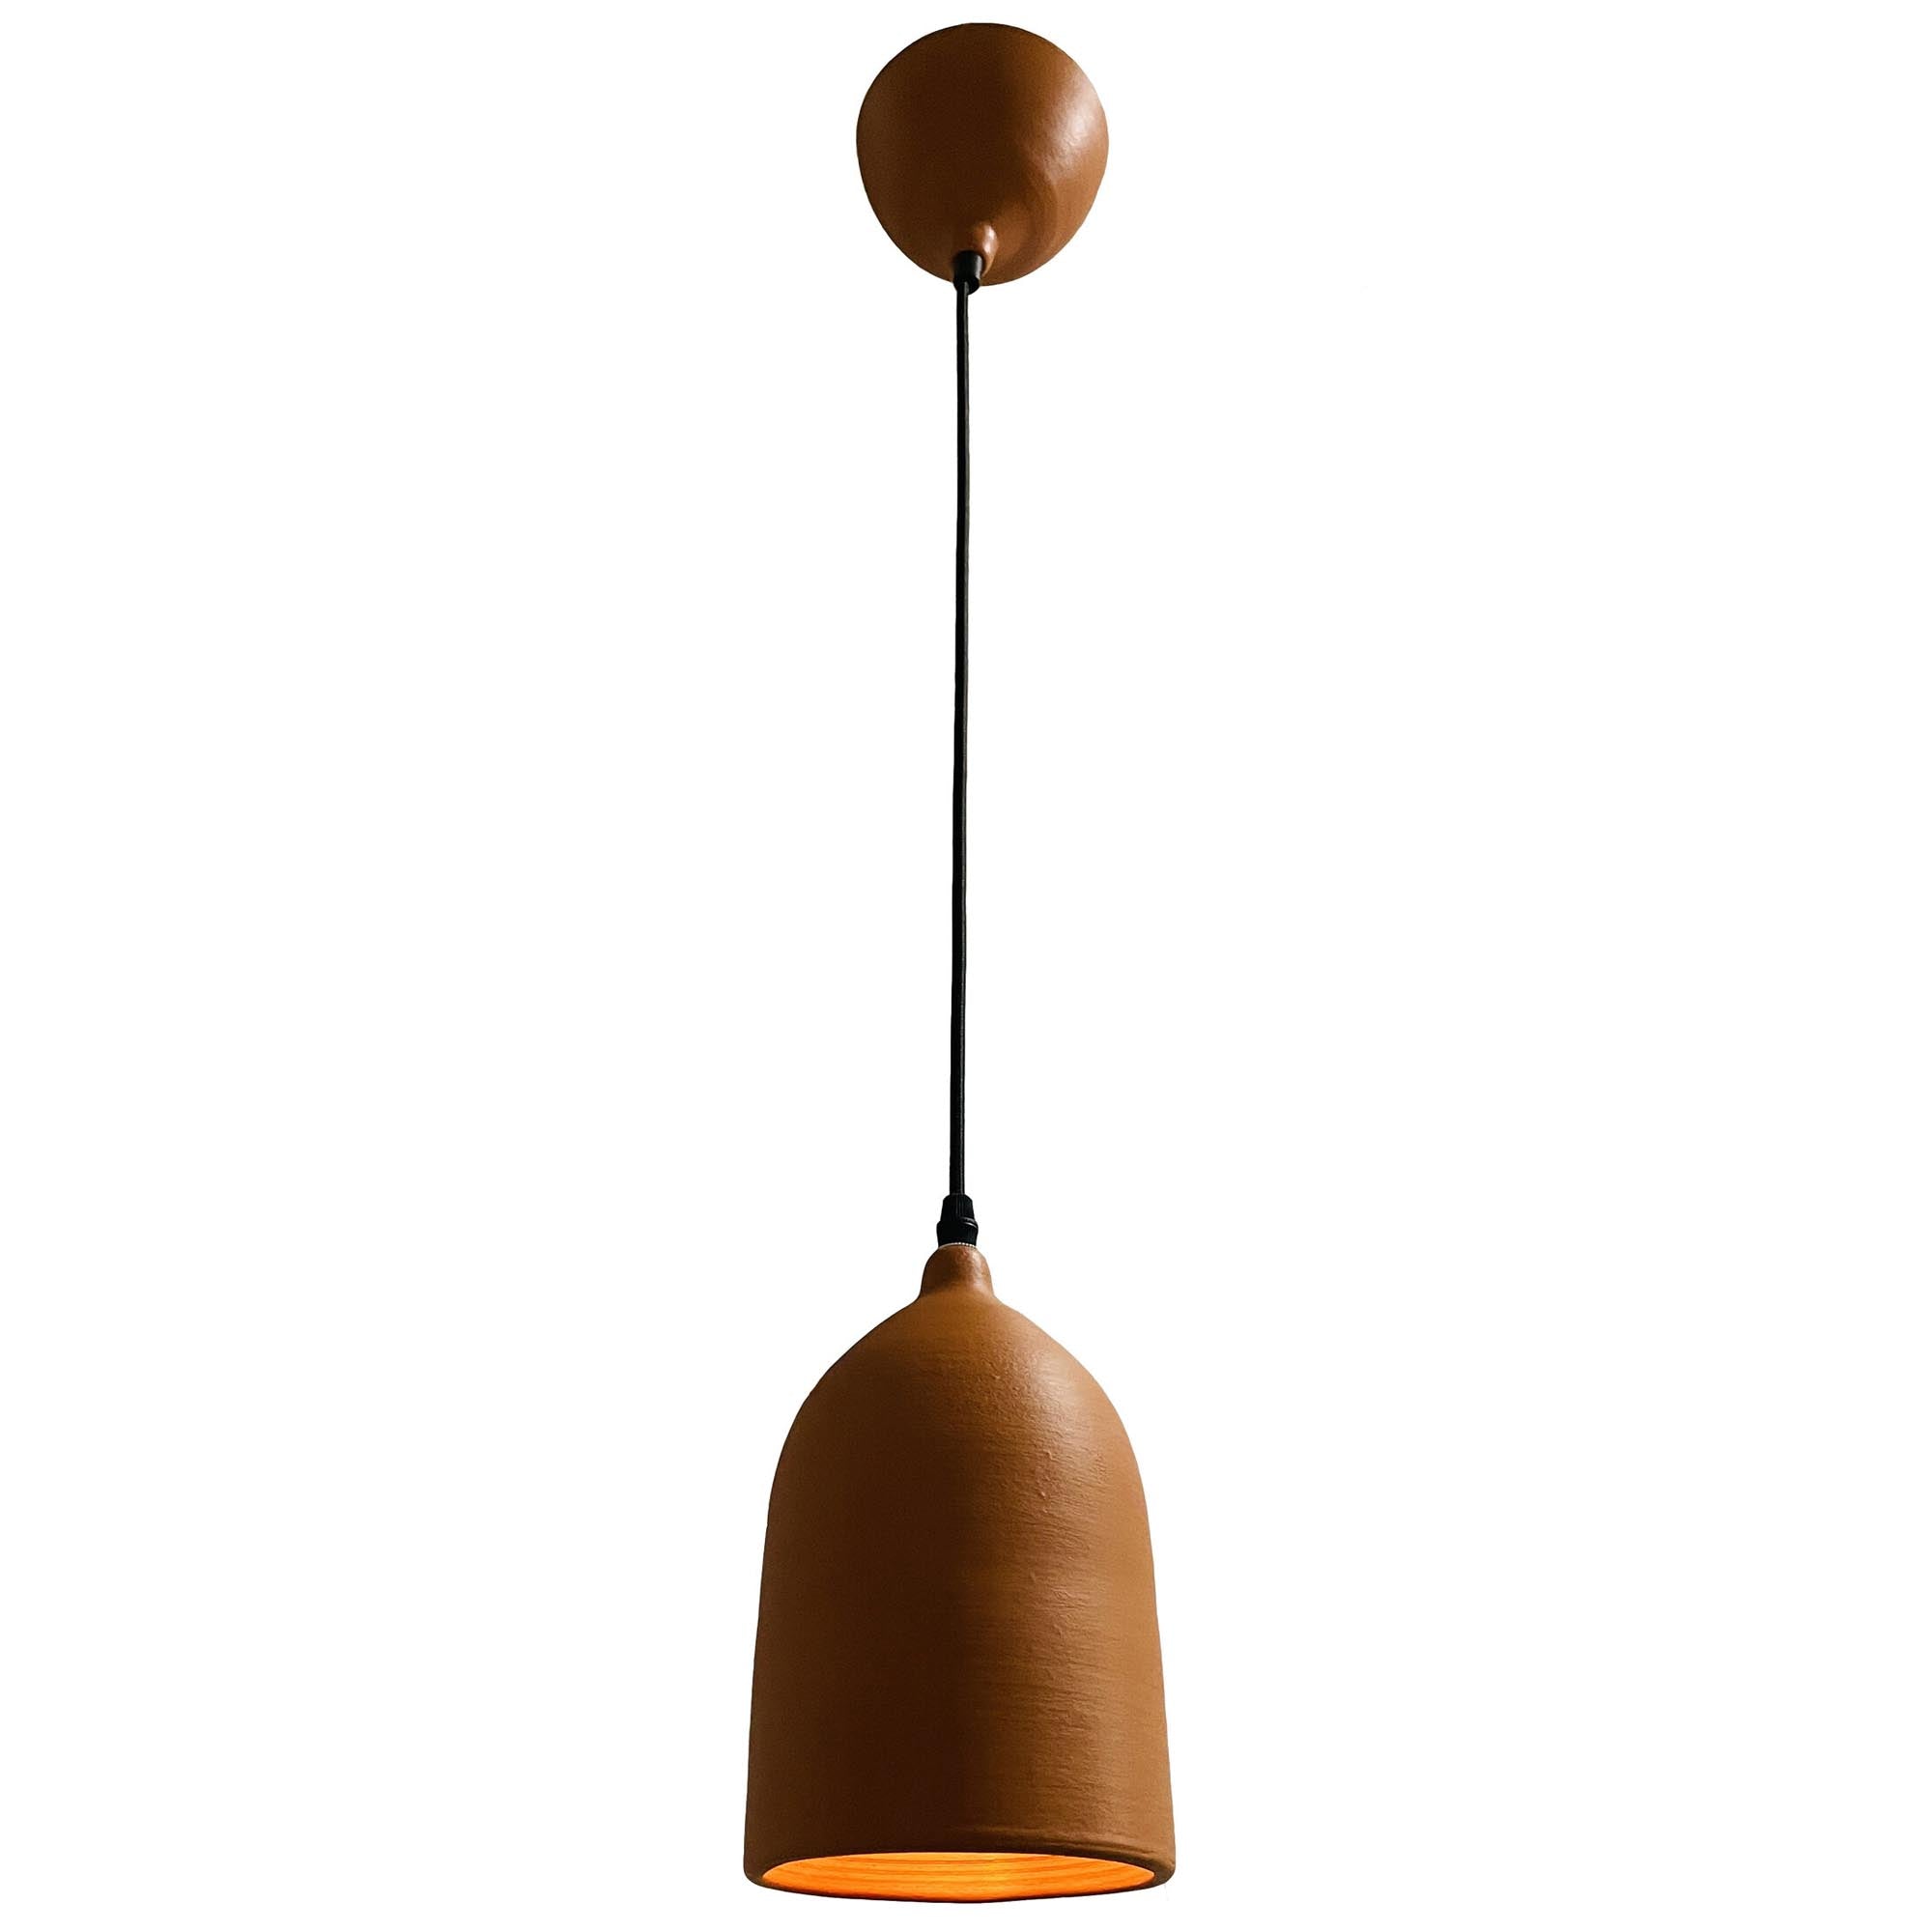 Підвісний світильник 12 х 22 см керамічний, топаз коричневий